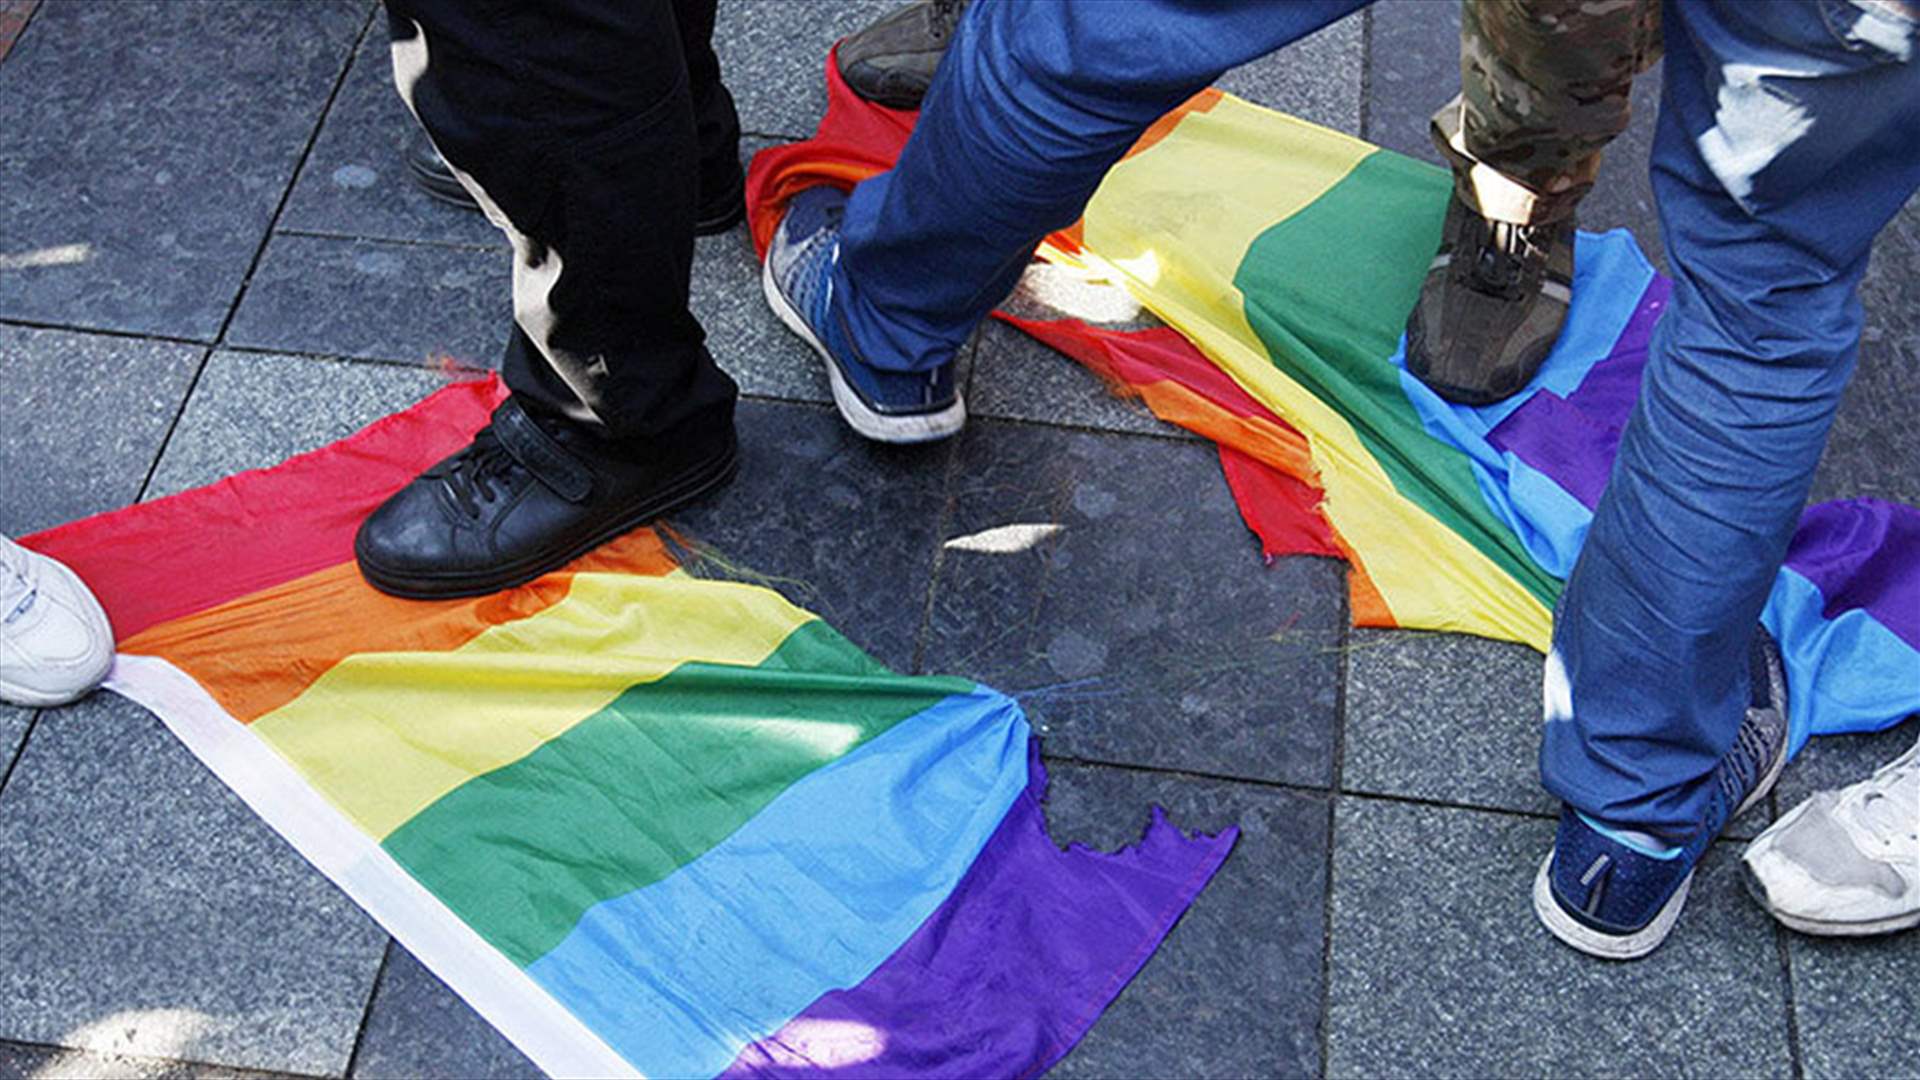 استجواب امرأة بسبب تصويرها ملصق ضد المثليين...اليكم ما حصل!